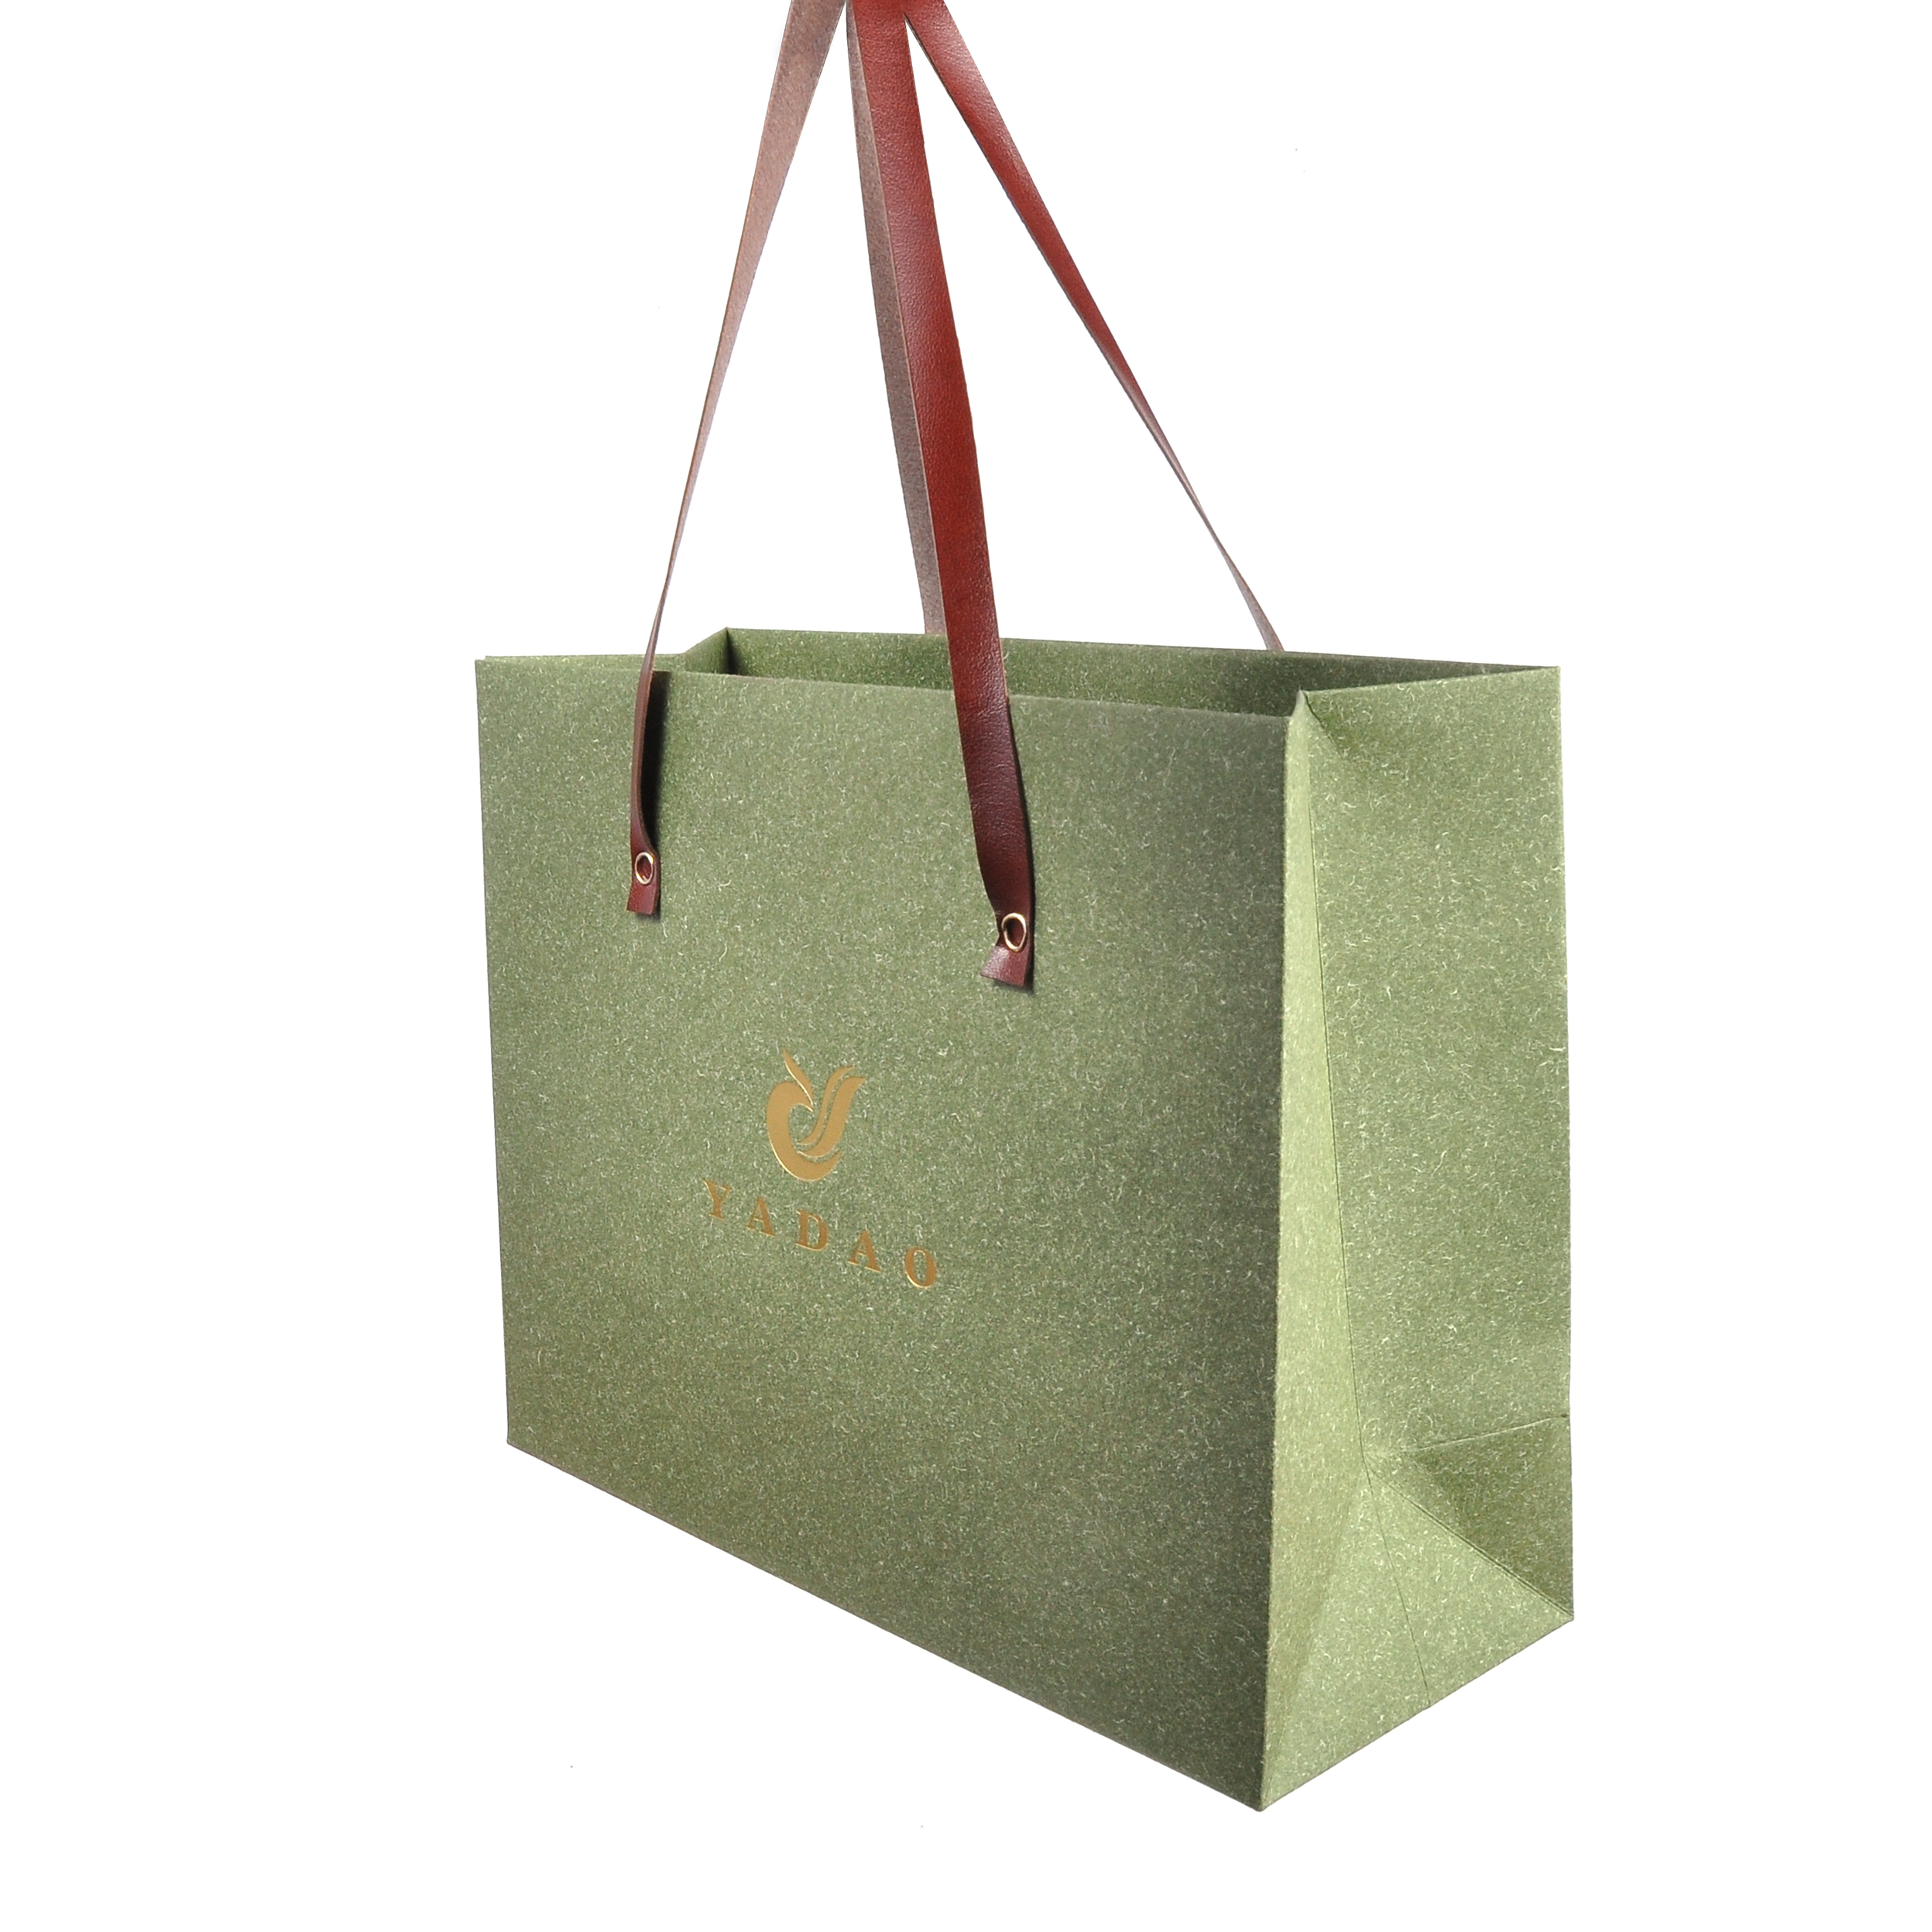 革製の取っ手が付いている宝石類かギフト包装のための個人化された紙の買い物袋